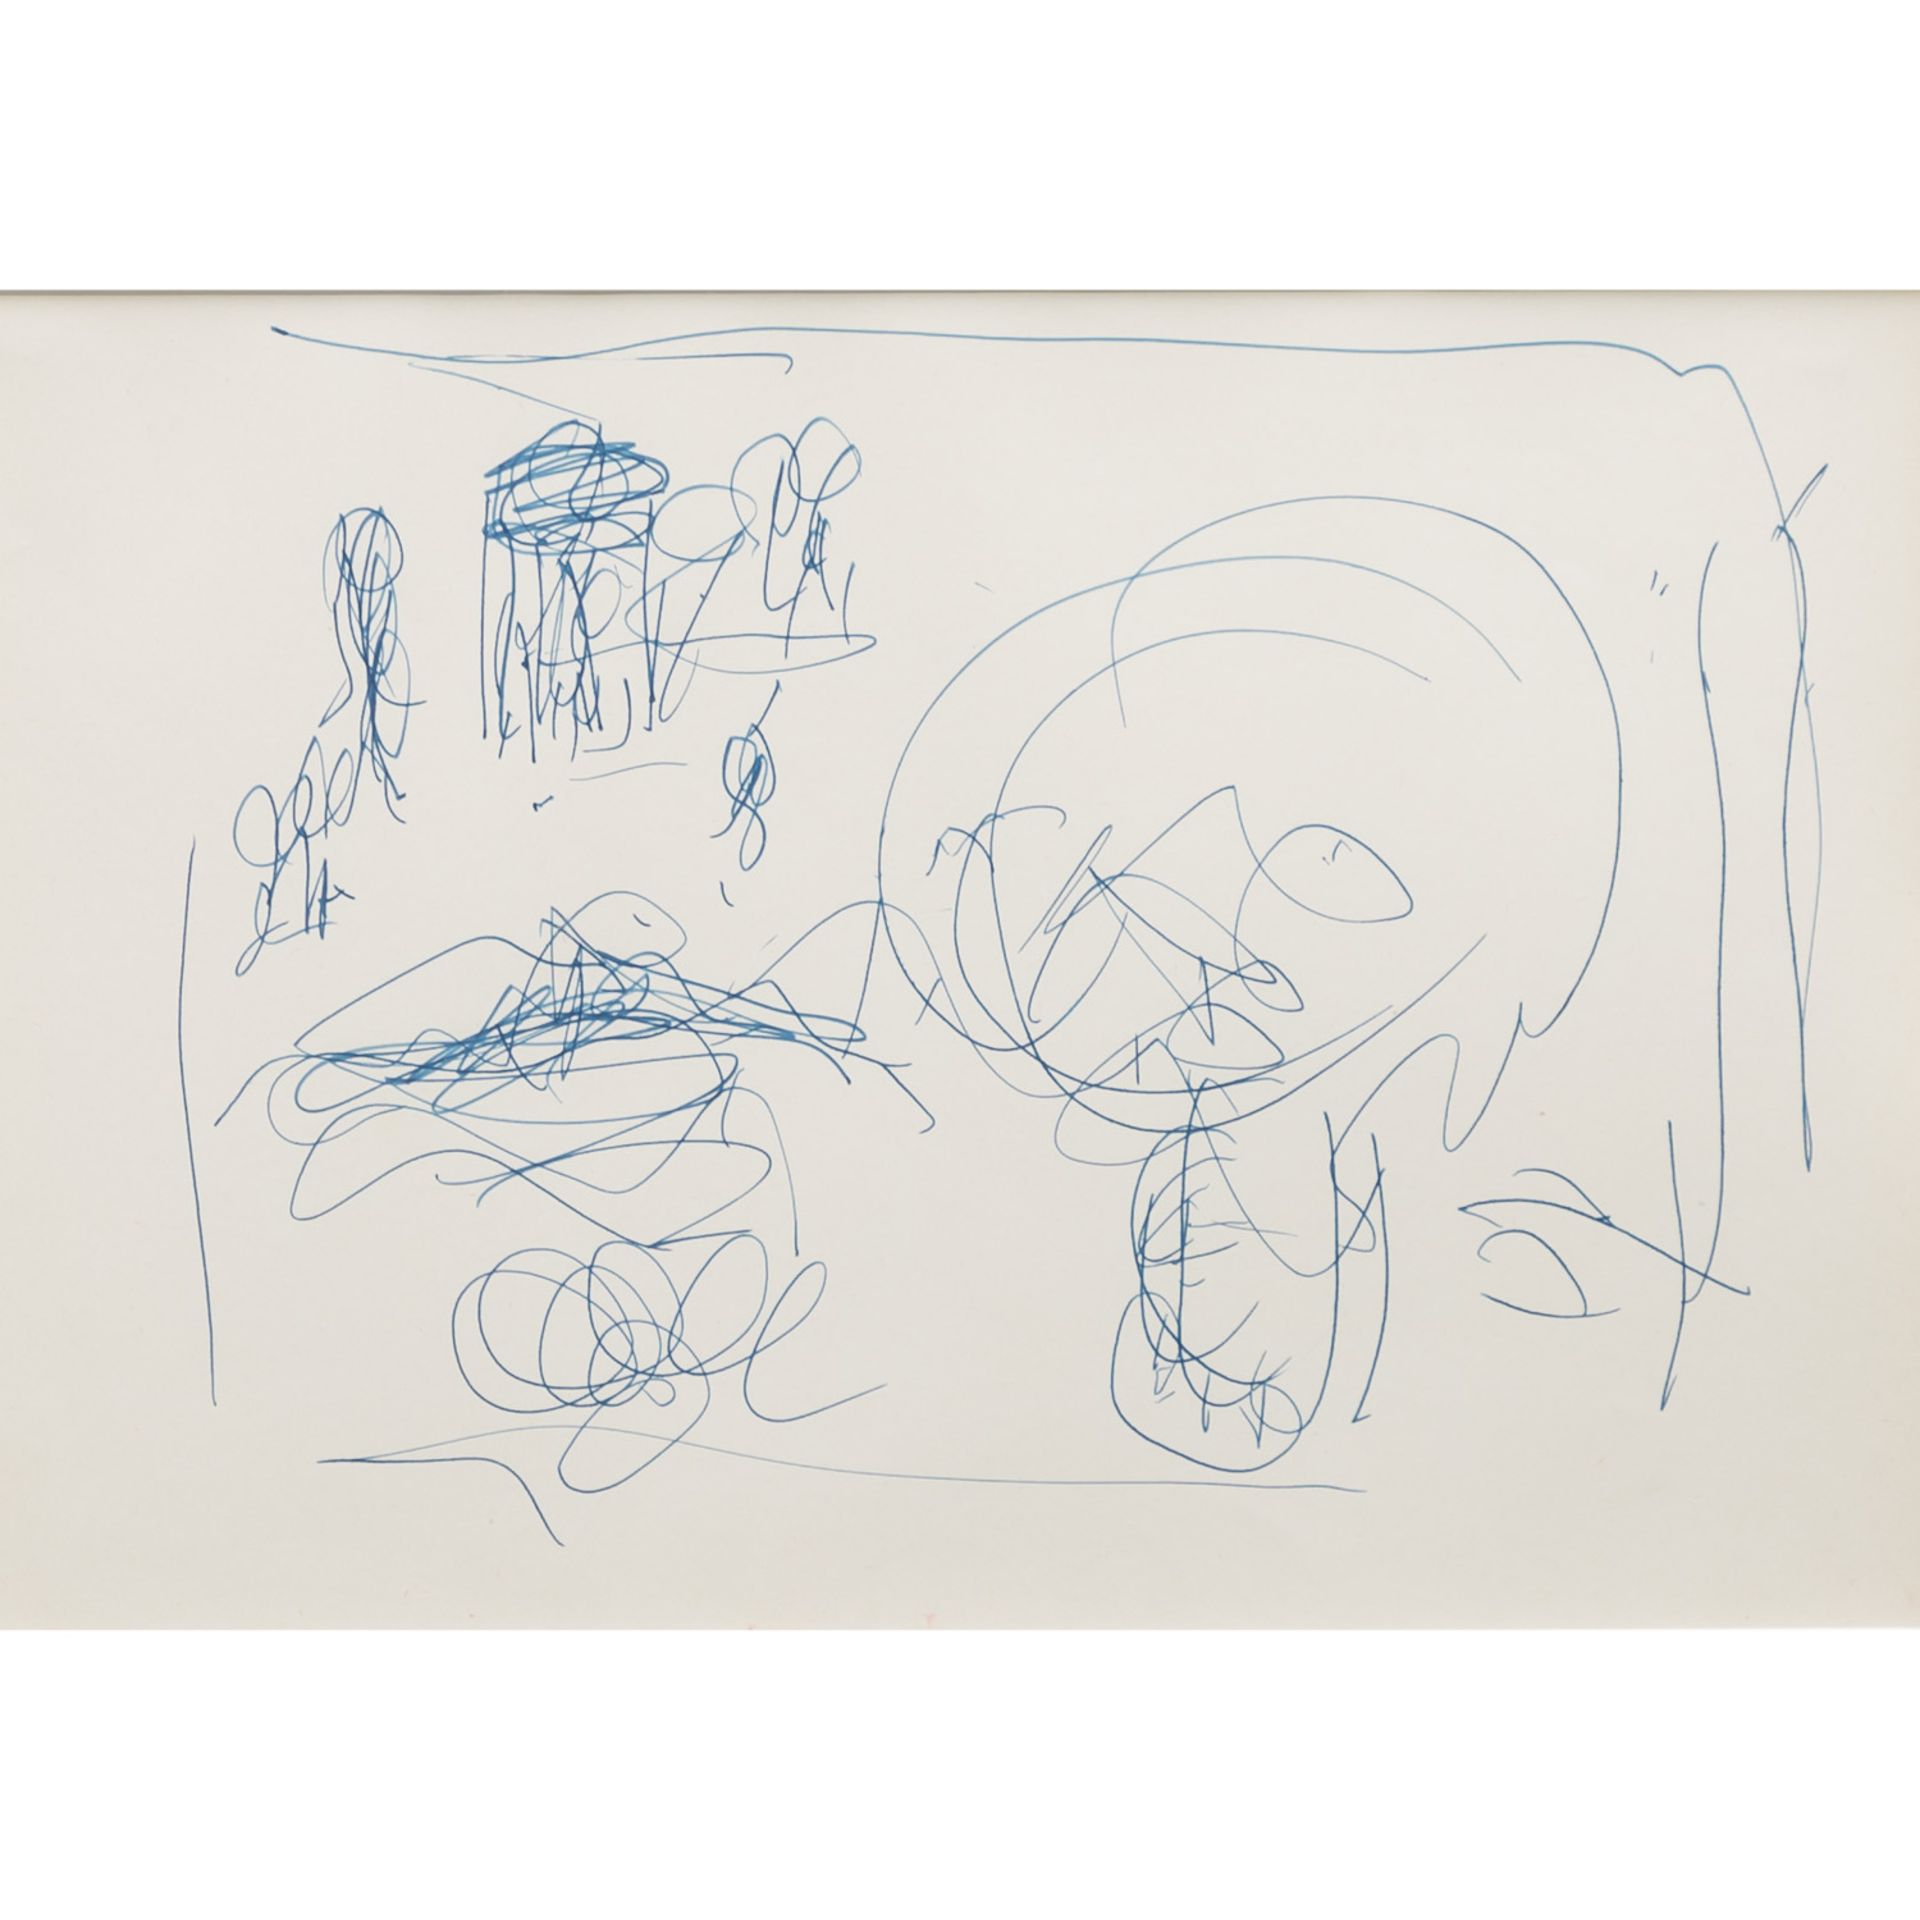 CHAGALL, MARC (1887-1985), Ohne Titel, Skizze zu "La Reine de Saba", 1970-75,Farbstiftzeichnung in